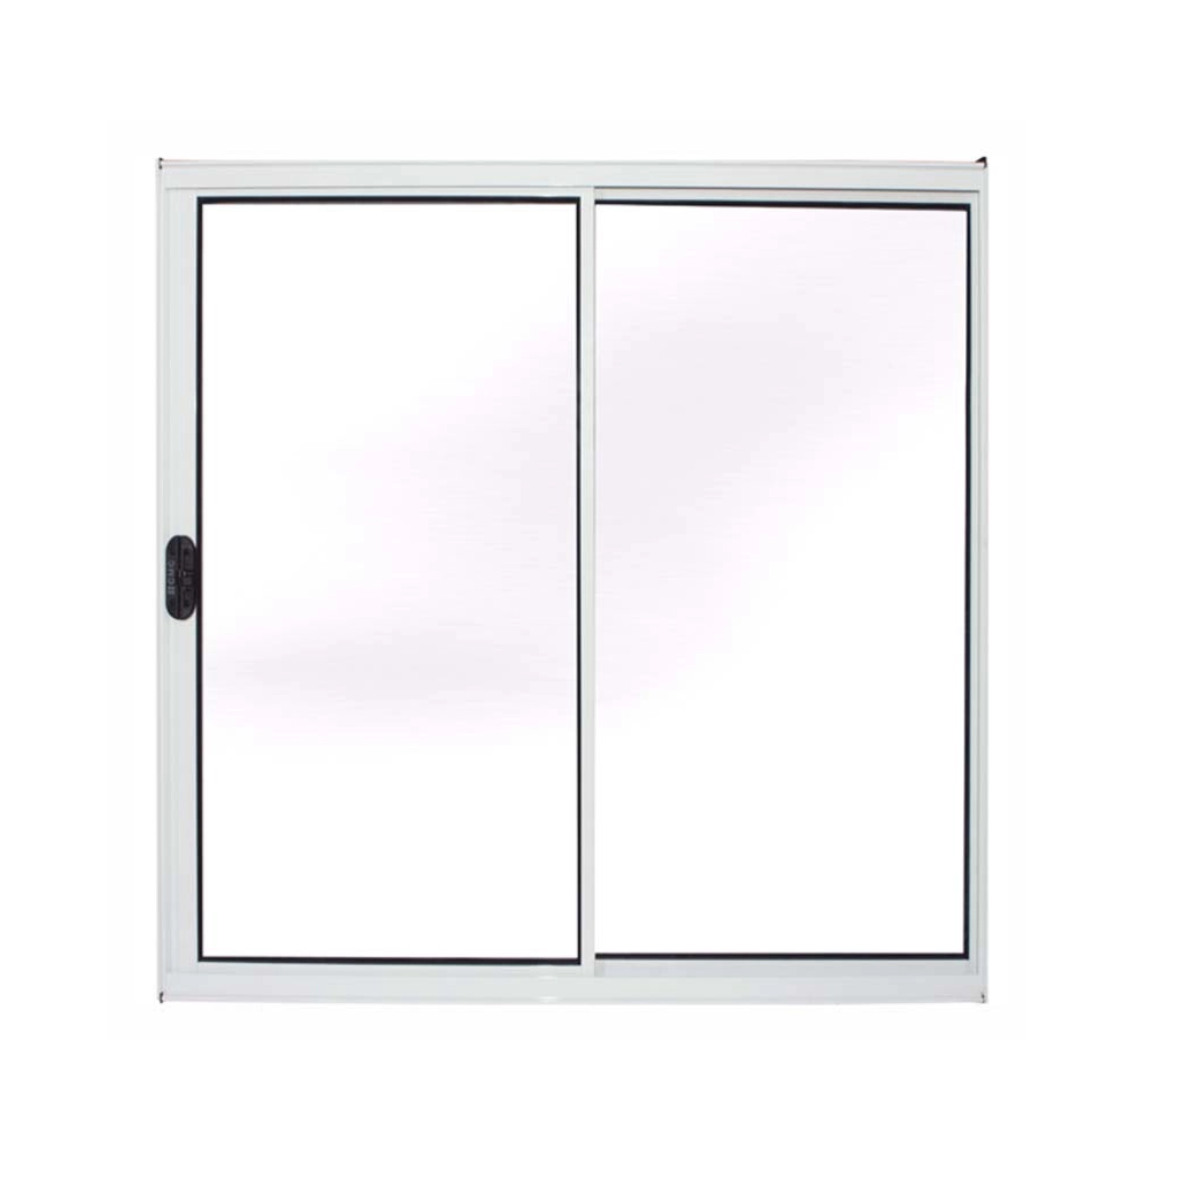 janela vitro sala alumínio branco 100x150 s/grade 2fls